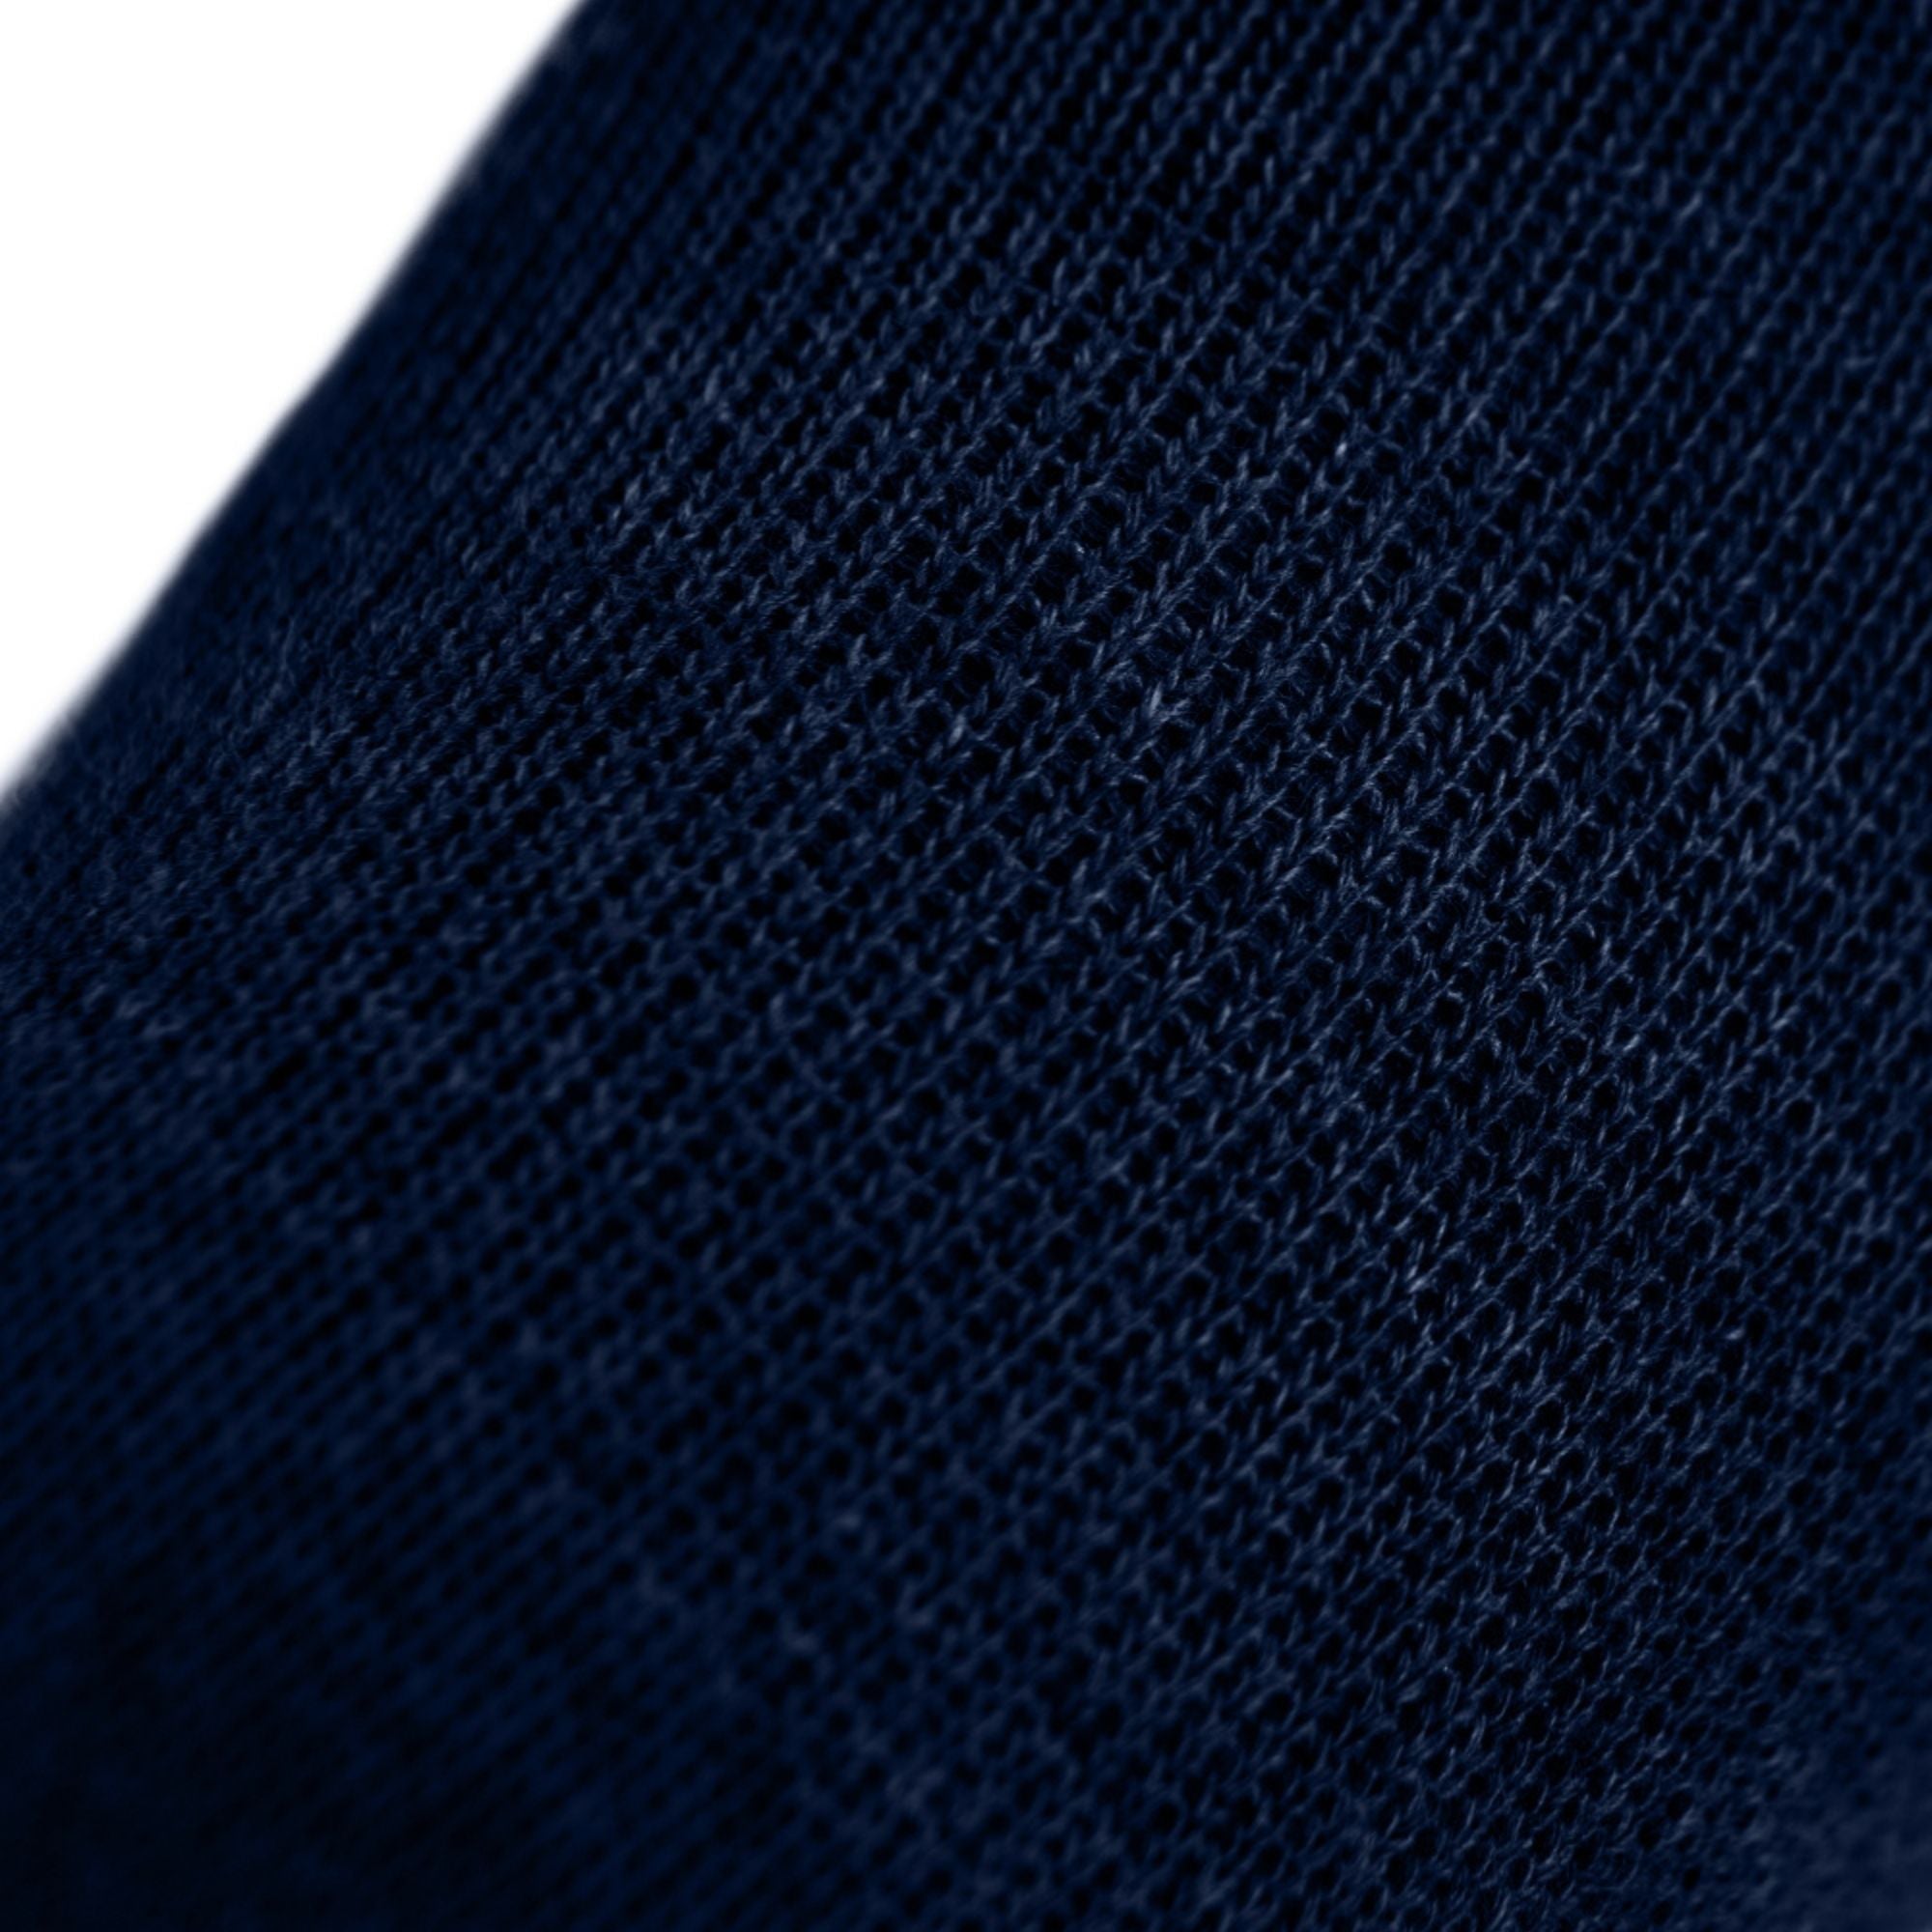 3er Sparpack Sport-Zehensocken aus Coolmax und Baumwolle von Knitido in navy blue